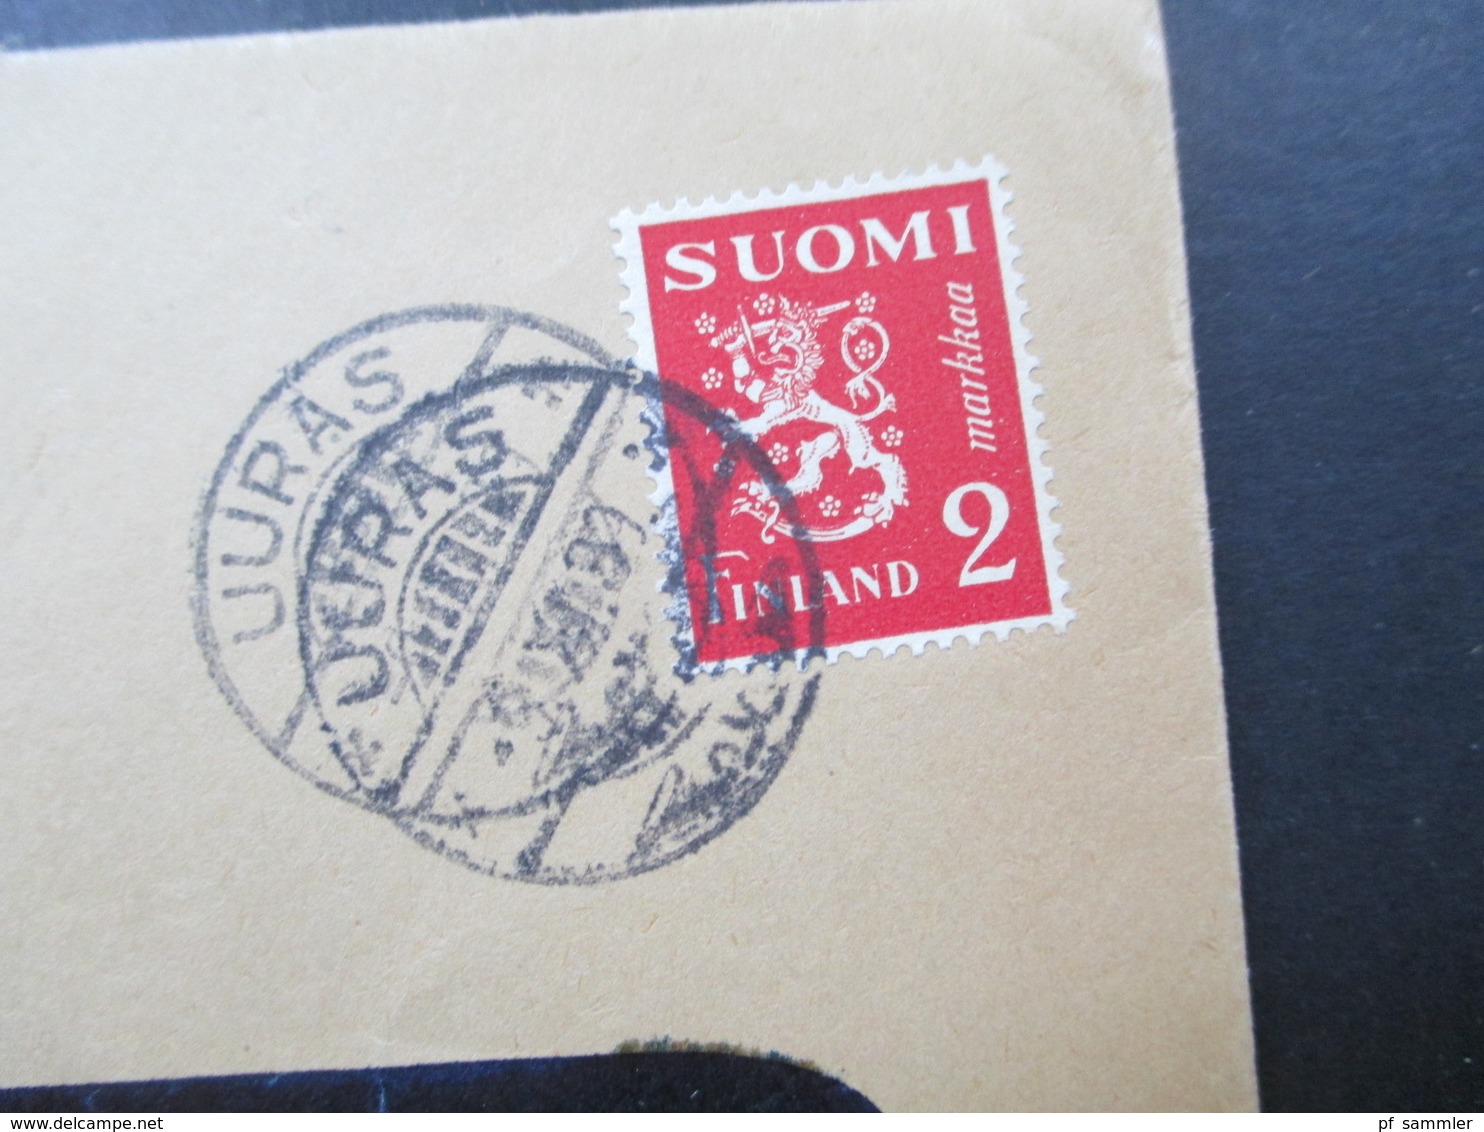 Finnland 1939 A.Ahlström Osakeyhtiö Uuras Trangsund Violetter Stempel Tarkastettu 20.1o.39 Ann. Asetuksen No 348 Nojalla - Lettres & Documents